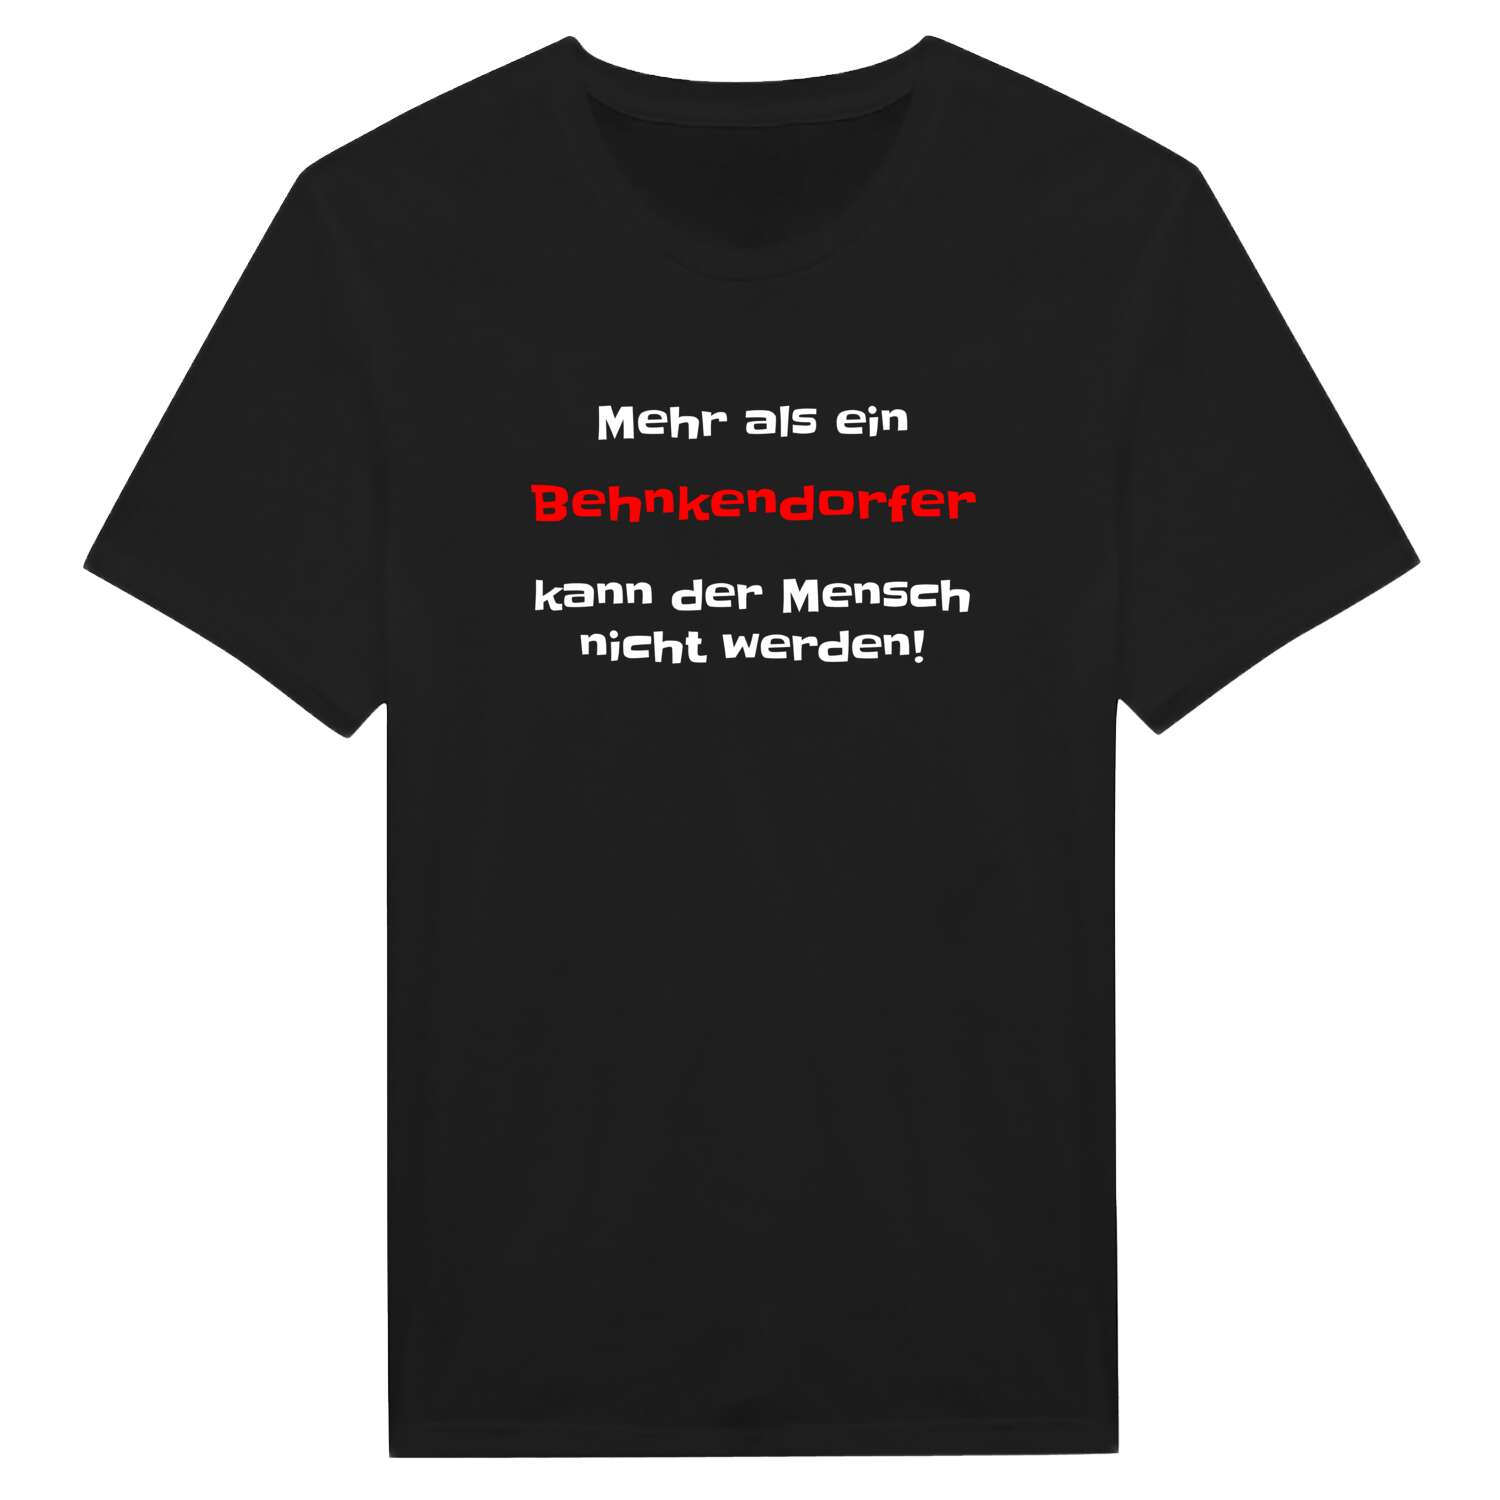 Behnkendorf T-Shirt »Mehr als ein«